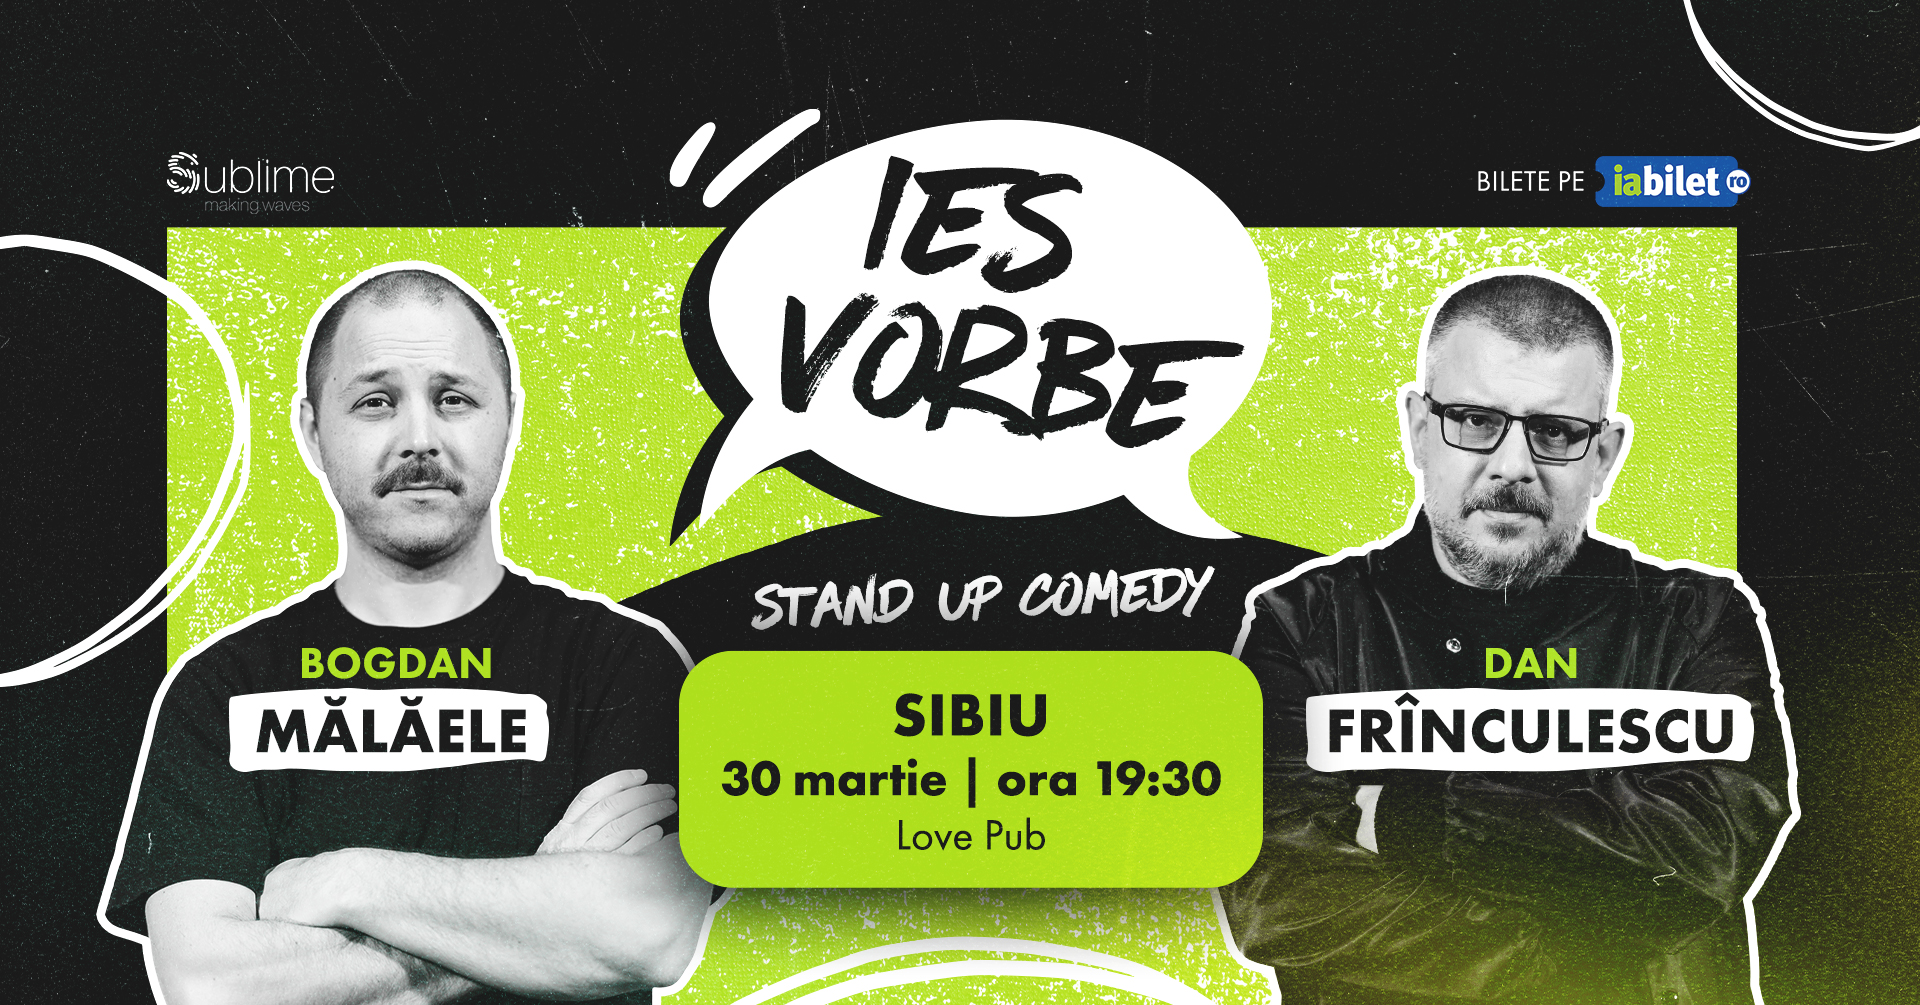 Sibiu: Stand Up Comedy cu Bogdan Malaele si Dan Frinculescu - “Ies Vorbe"